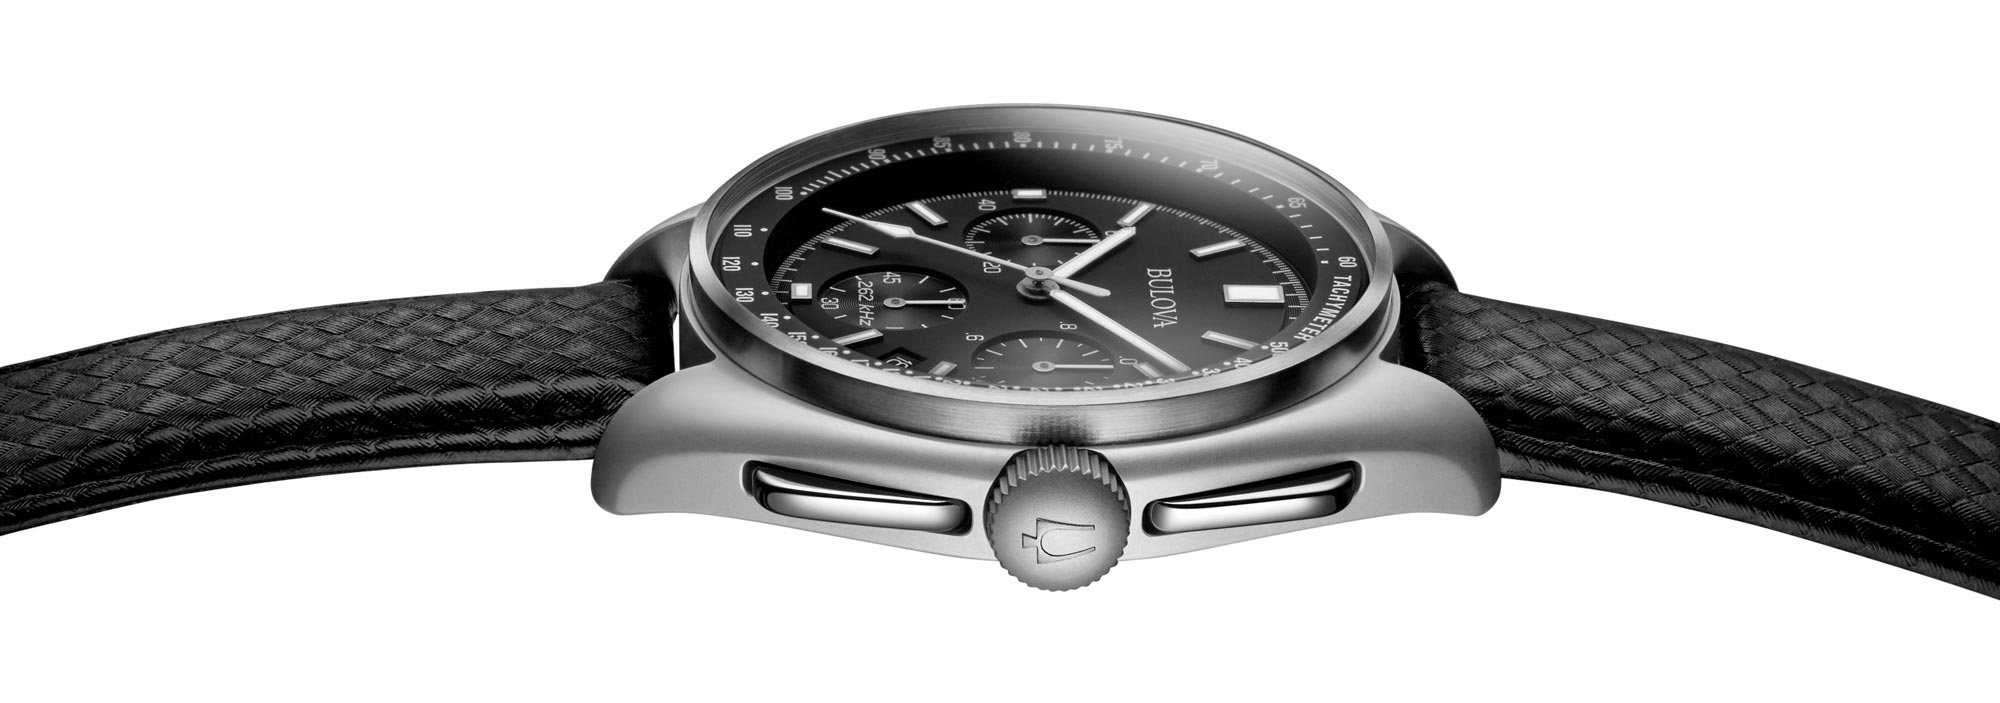 Relógio com pulseira negra e mostrador metálico cinza-escuro da coleção The Lunar Pilot Limited Edition de relógios Bulova, em comemoração do 50° aniversário da missão Apolo 15.